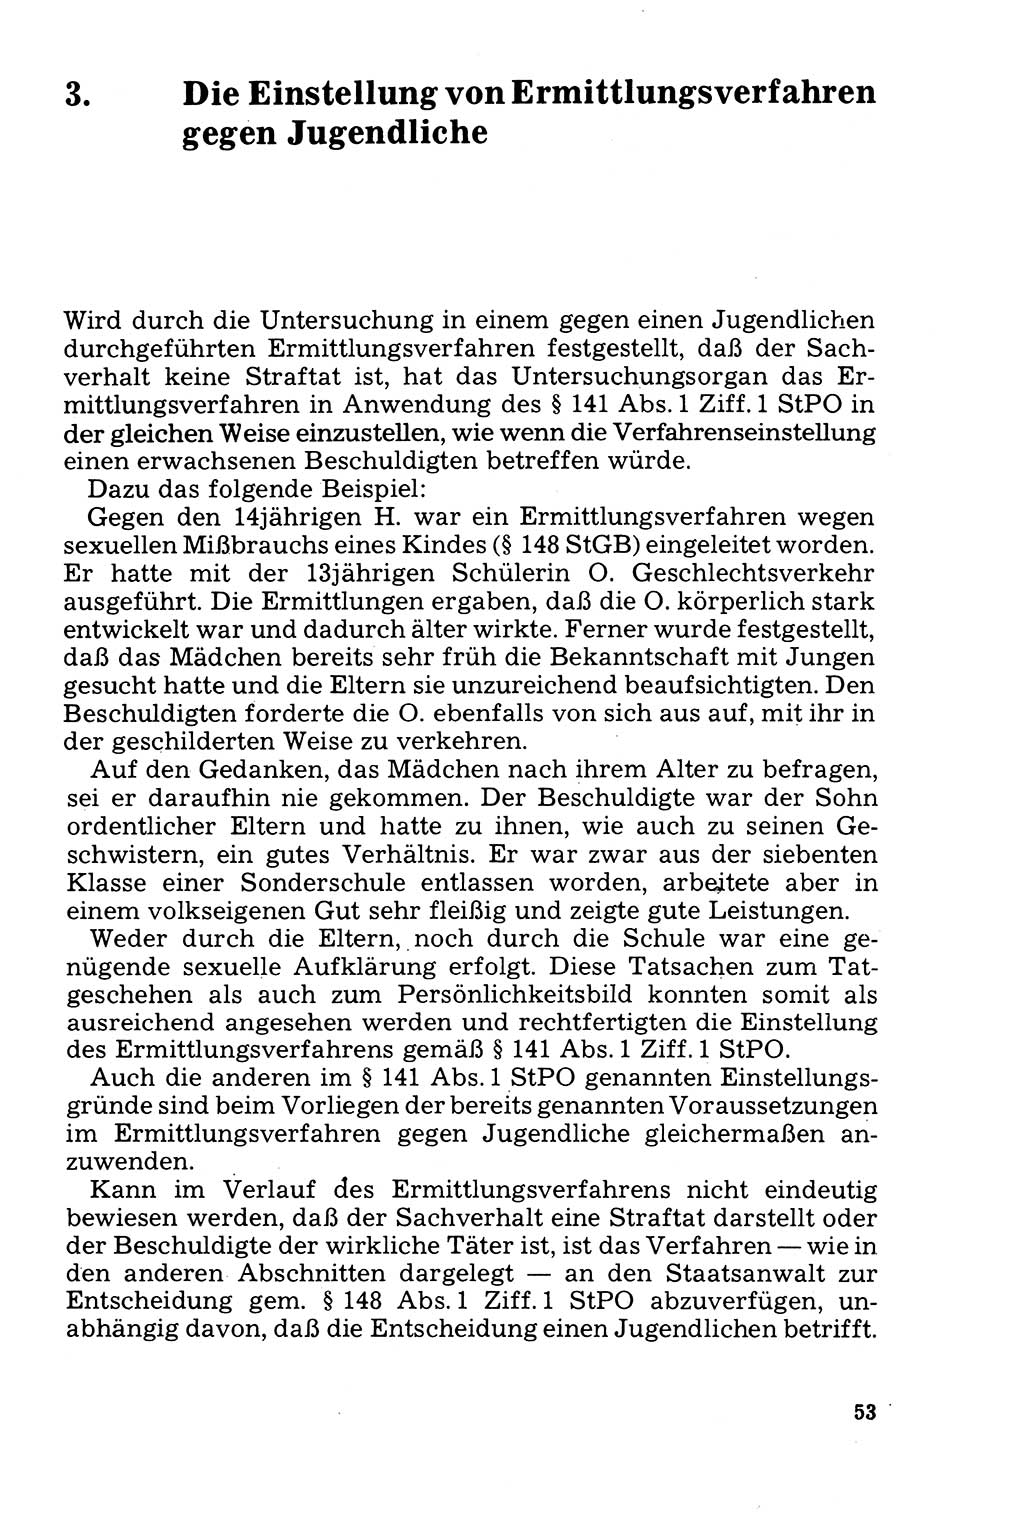 Der Abschluß des Ermittlungsverfahrens [Deutsche Demokratische Republik (DDR)] 1978, Seite 53 (Abschl. EV DDR 1978, S. 53)